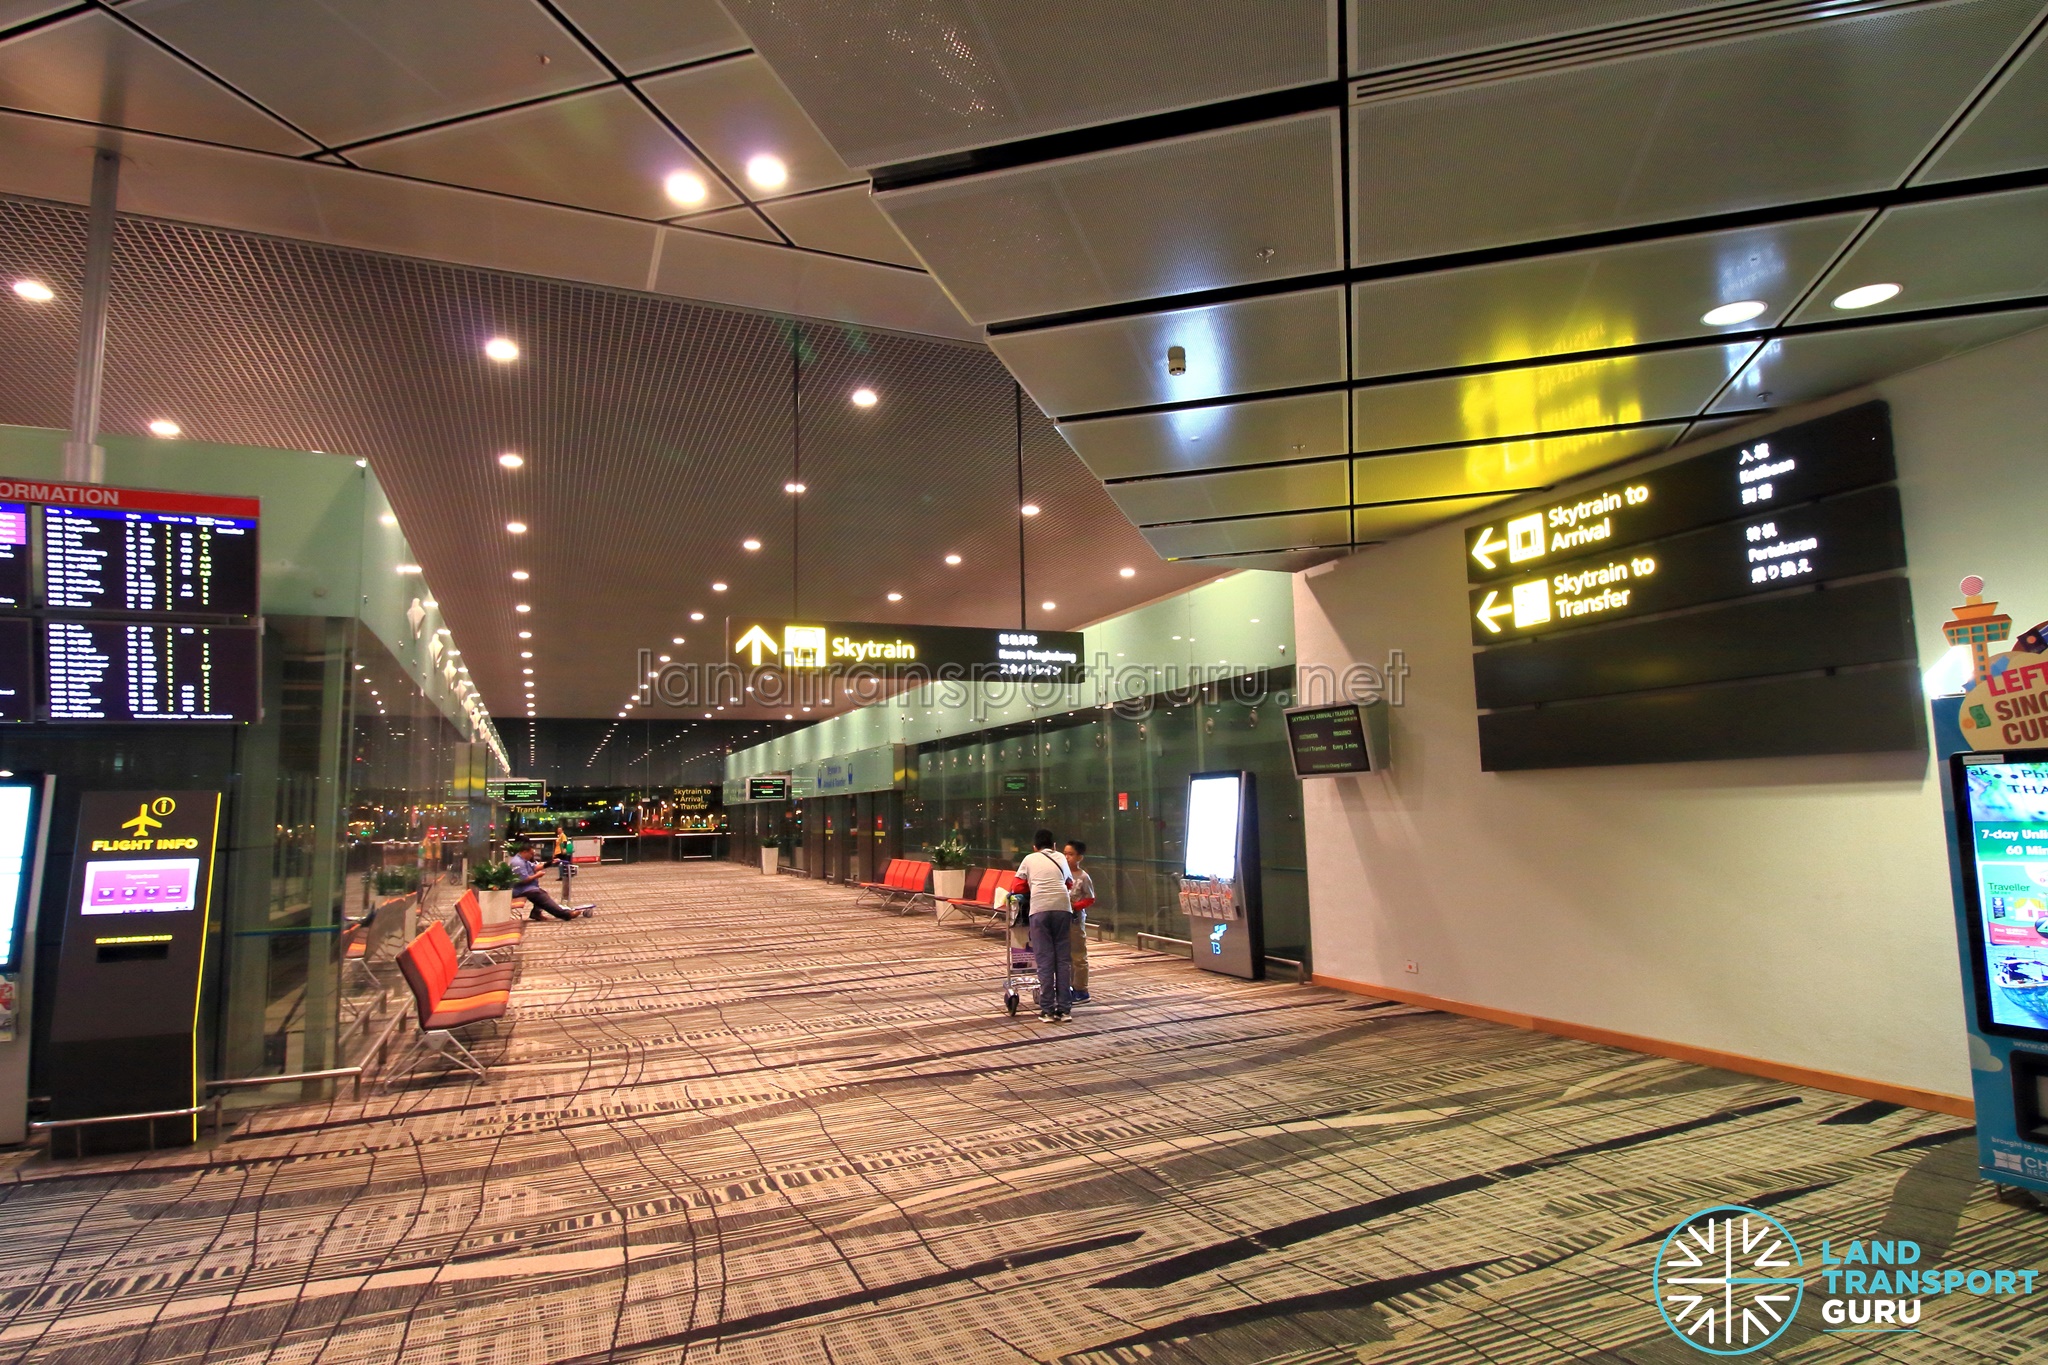 Singapore Changi Airport - In Transit